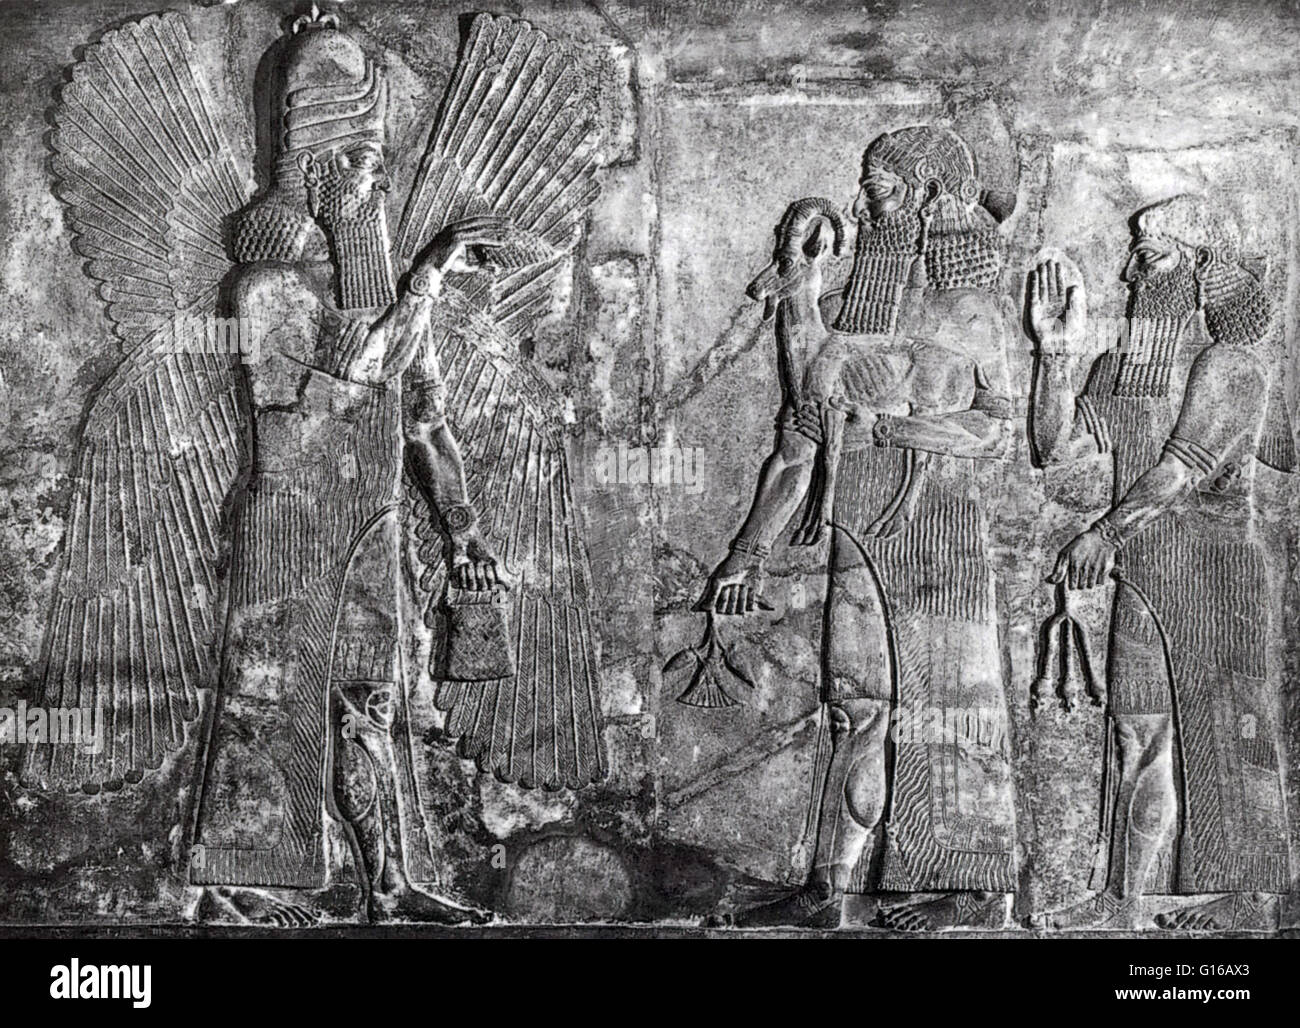 Il re assiro, Sargon II, presenta un capro in sacrificio al dio Ahura Mazda, il dio supremo di zoroastrismo. Sollievo da Khorsabad Palace. 742-705 A.C. Ahura Mazda è la più alta divinità di culto in lo zoroastrismo, oltre ad essere la prima e più frequenti Foto Stock